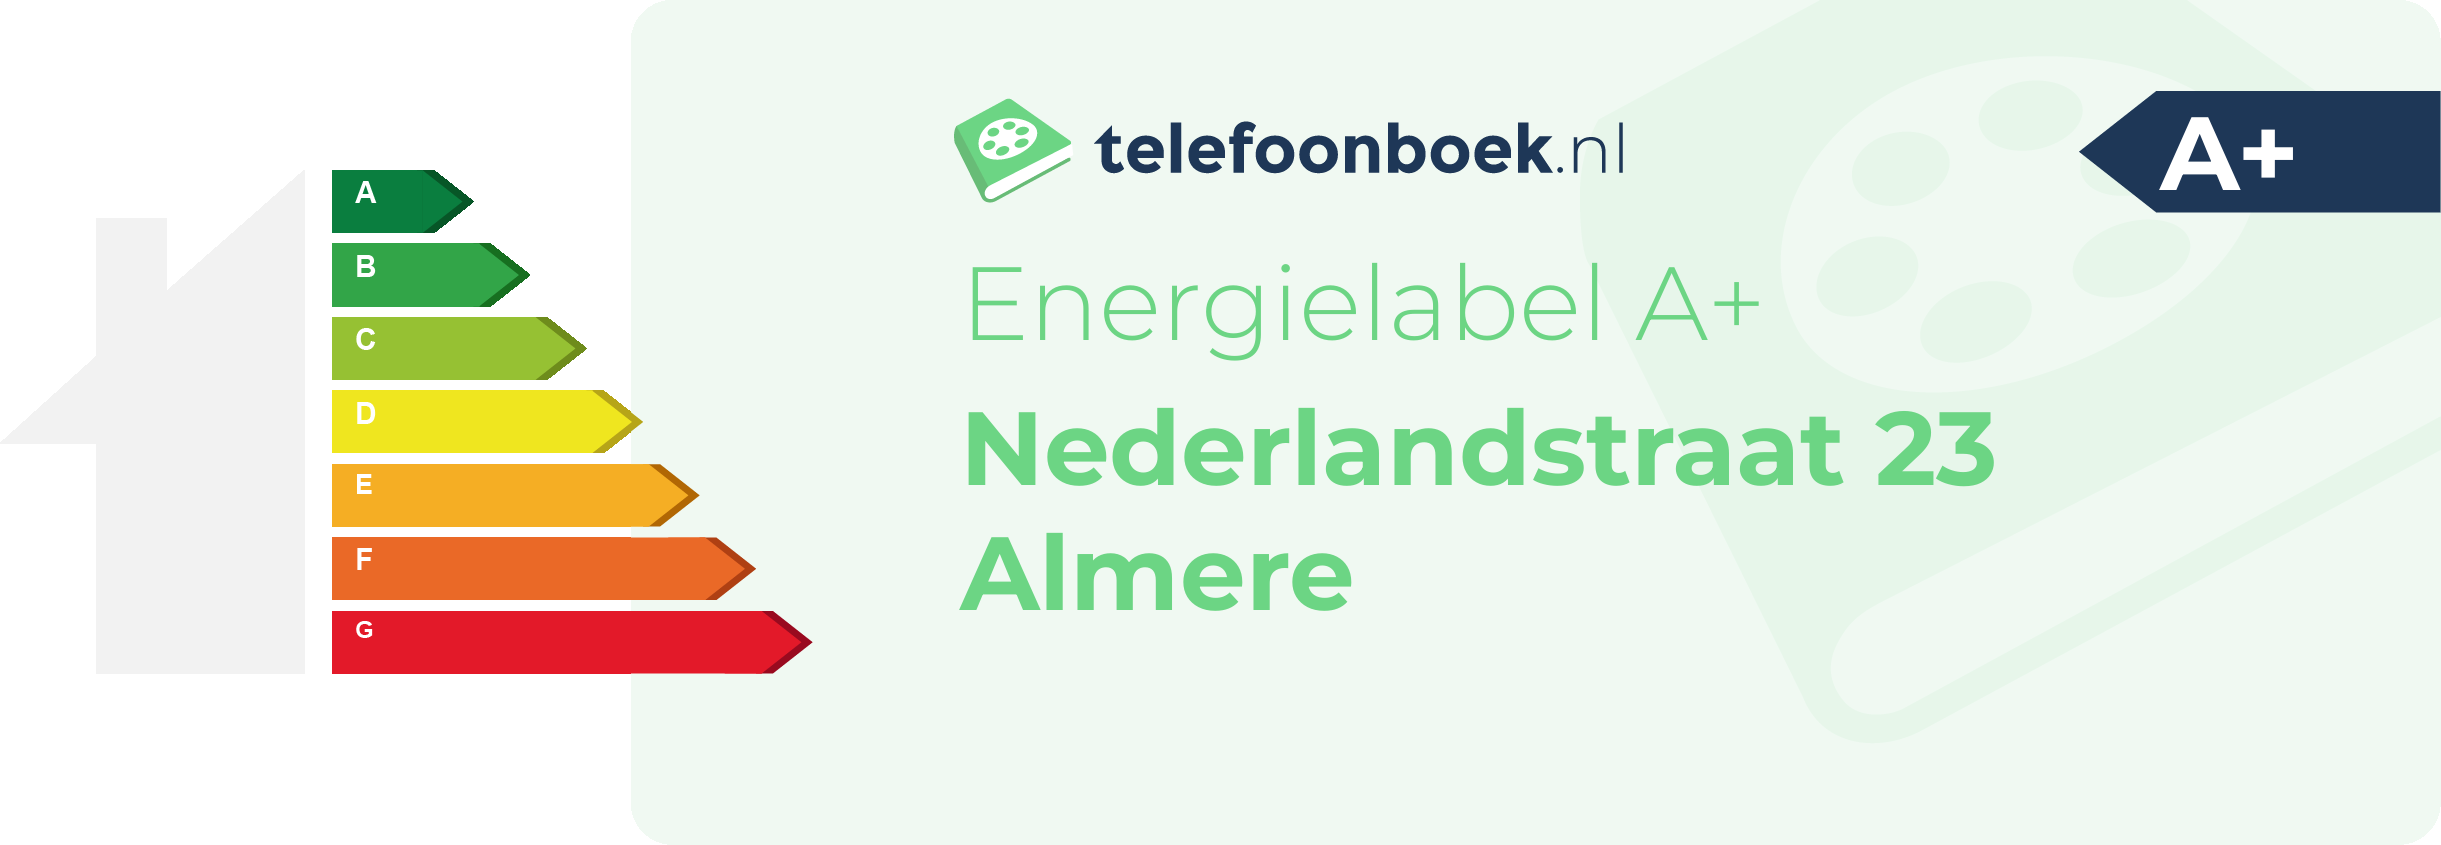 Energielabel Nederlandstraat 23 Almere